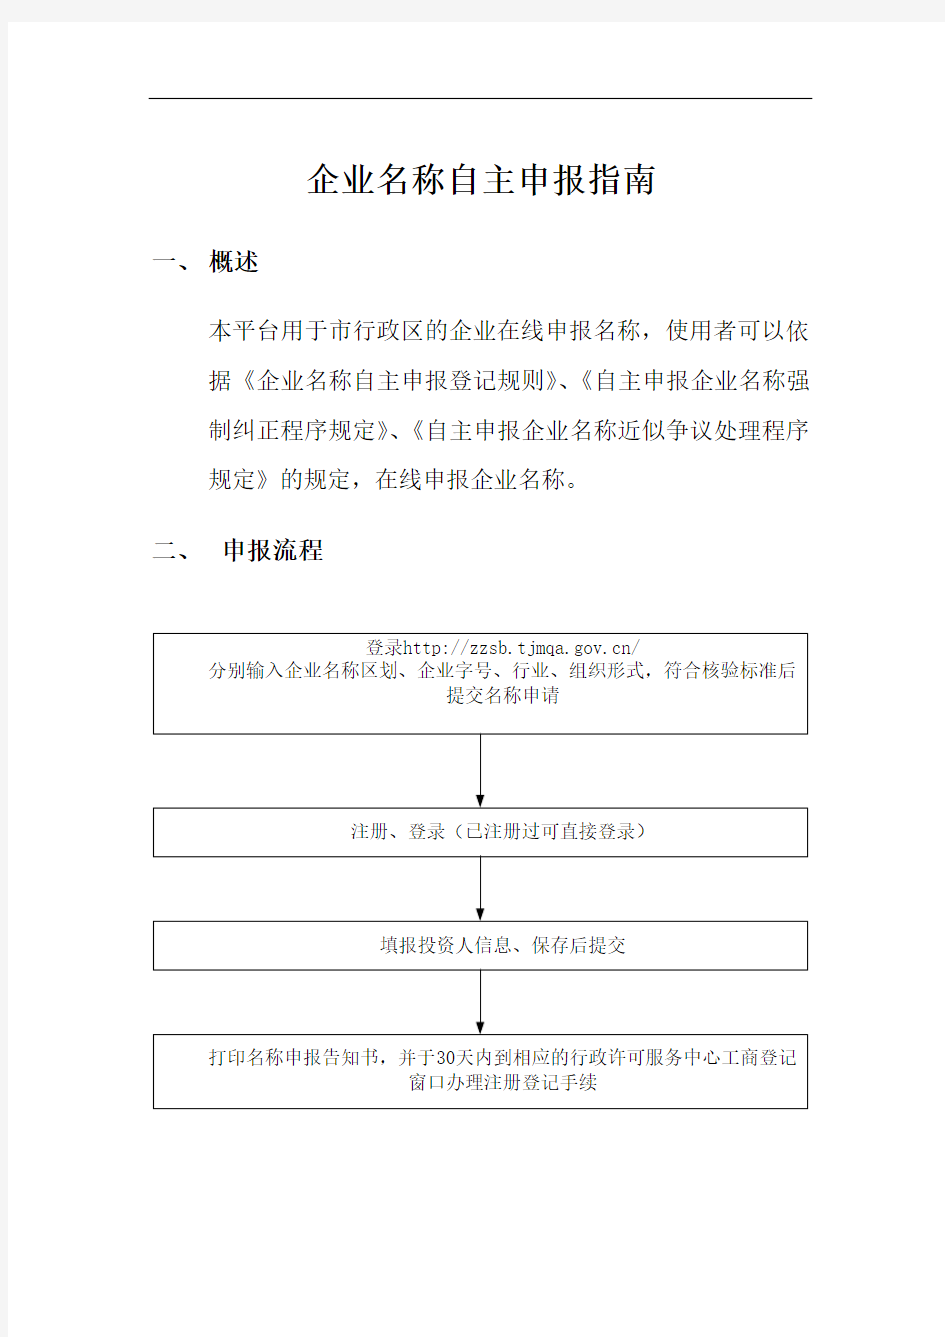 天津市企业名称自主申报平台操作指南